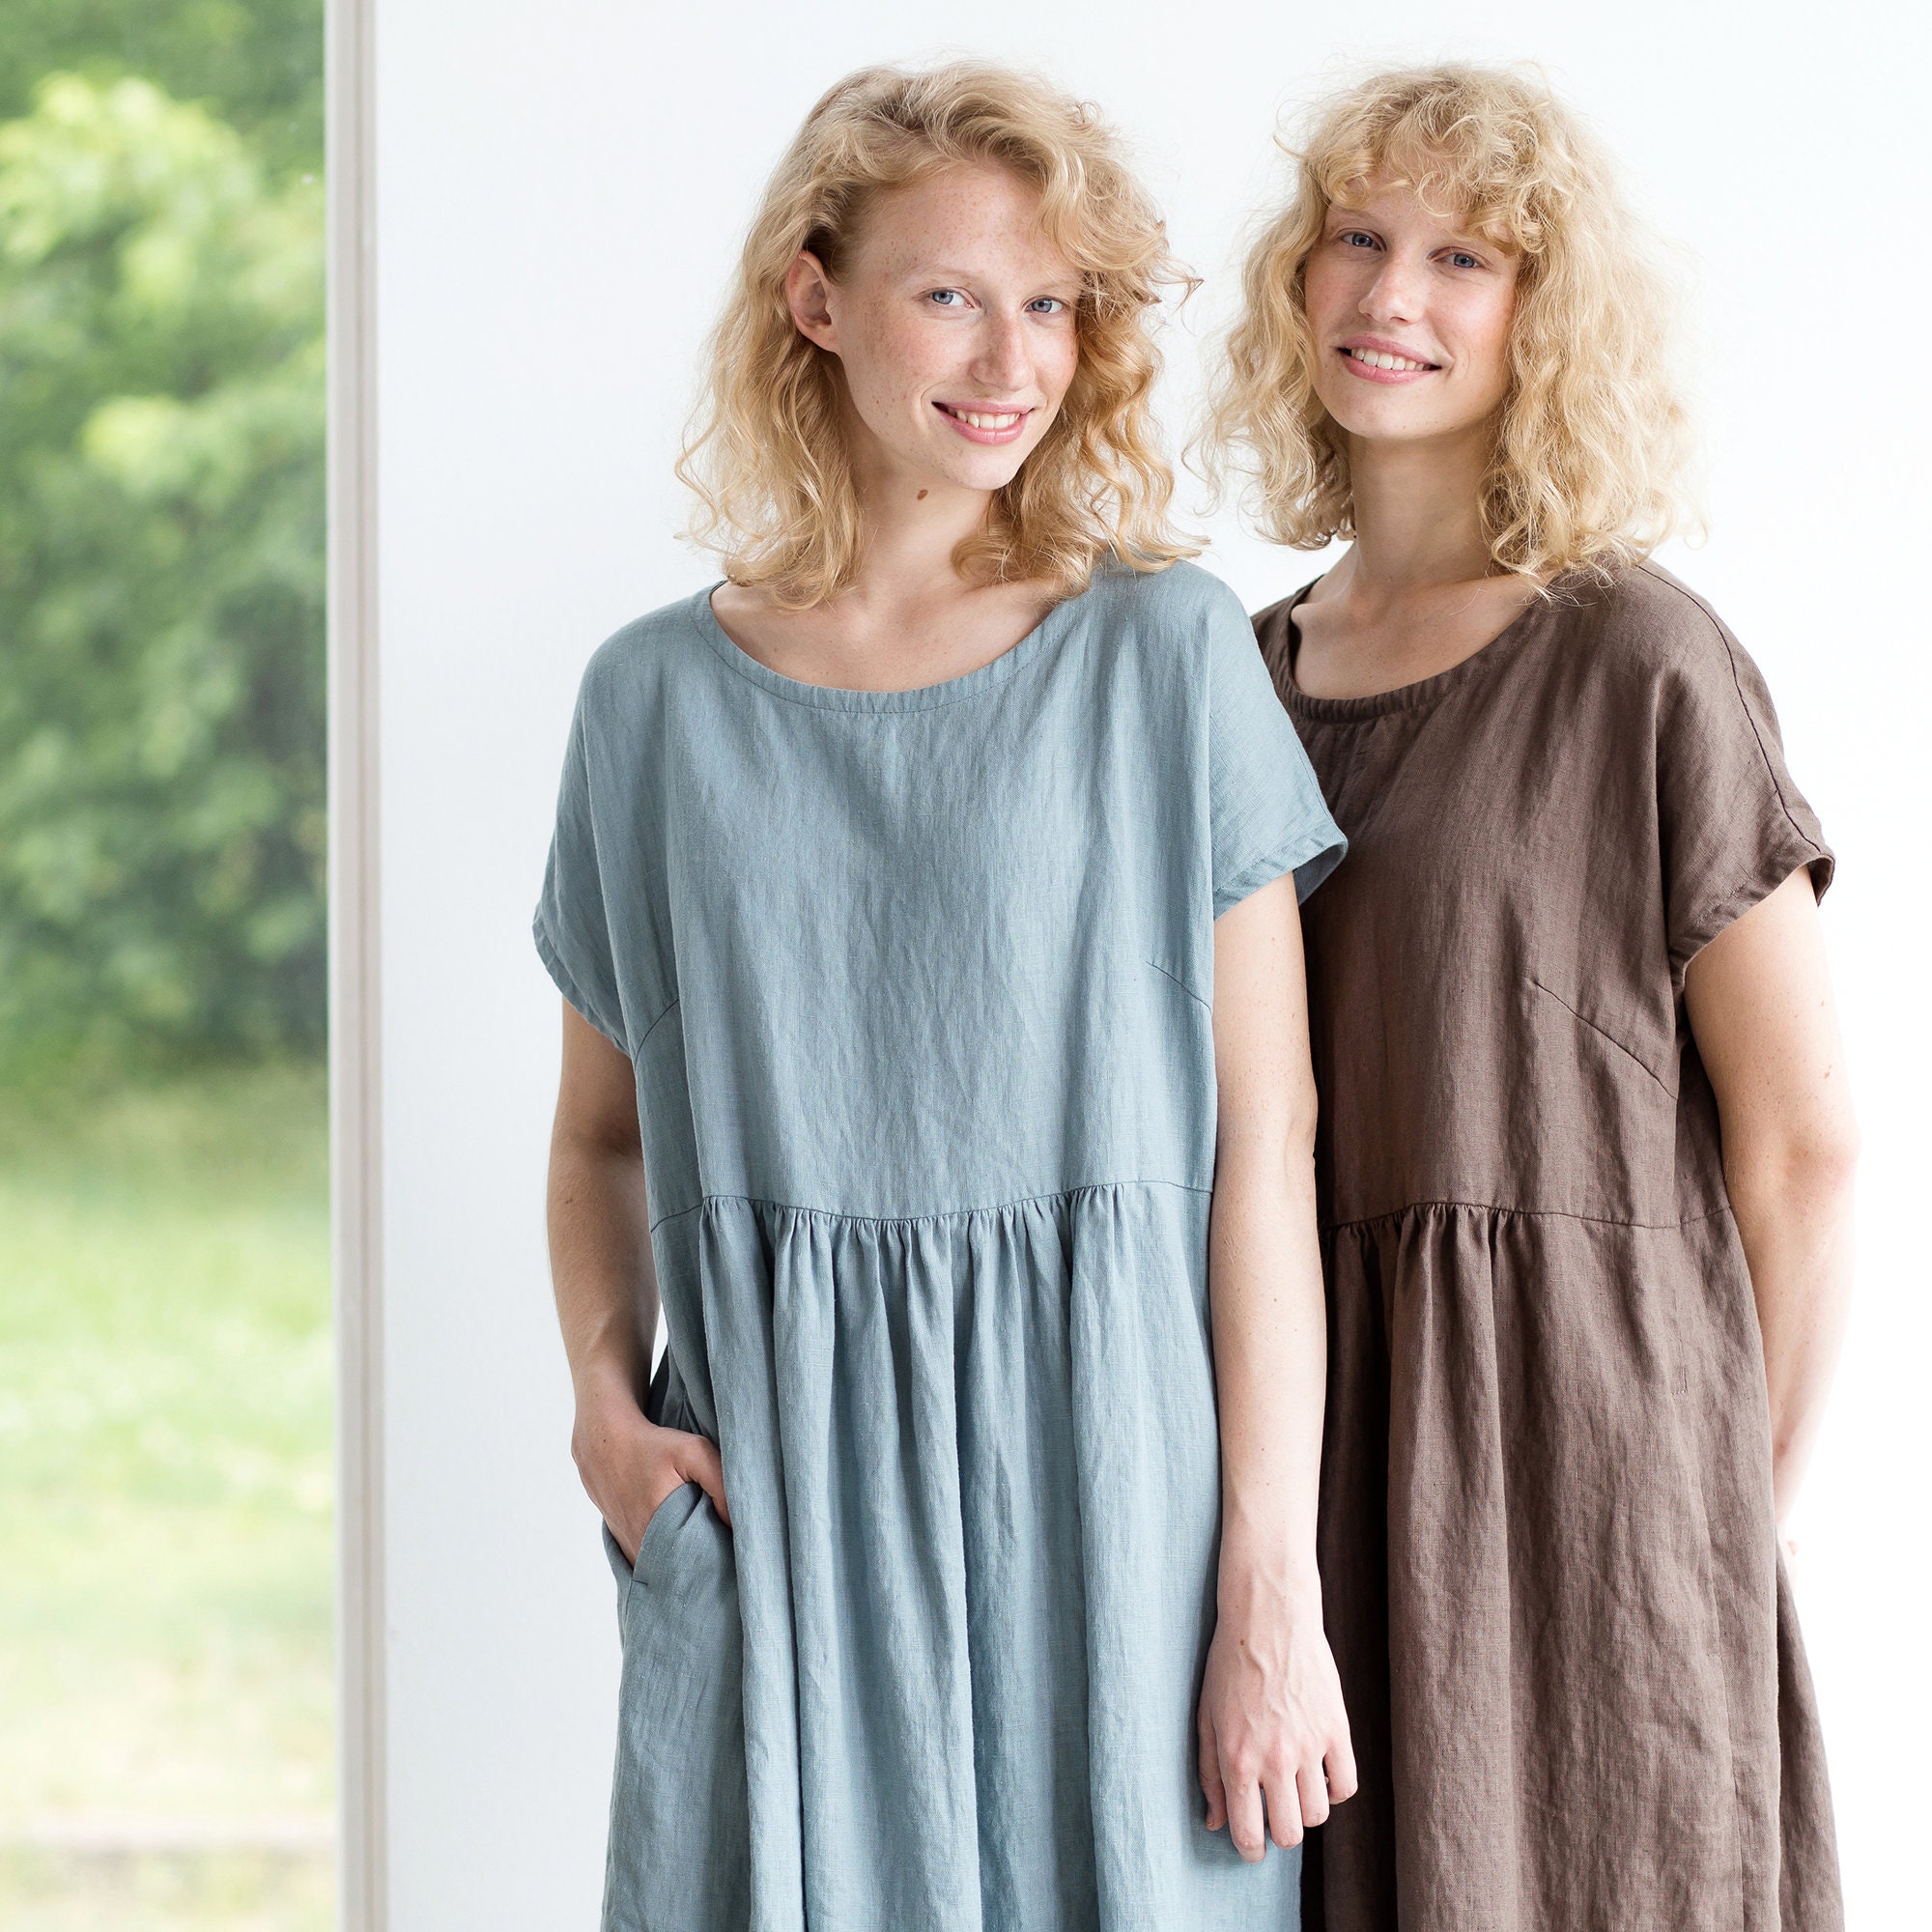 Maxi linen dress / Linen dress / Summer linen dress / Smock | Etsy